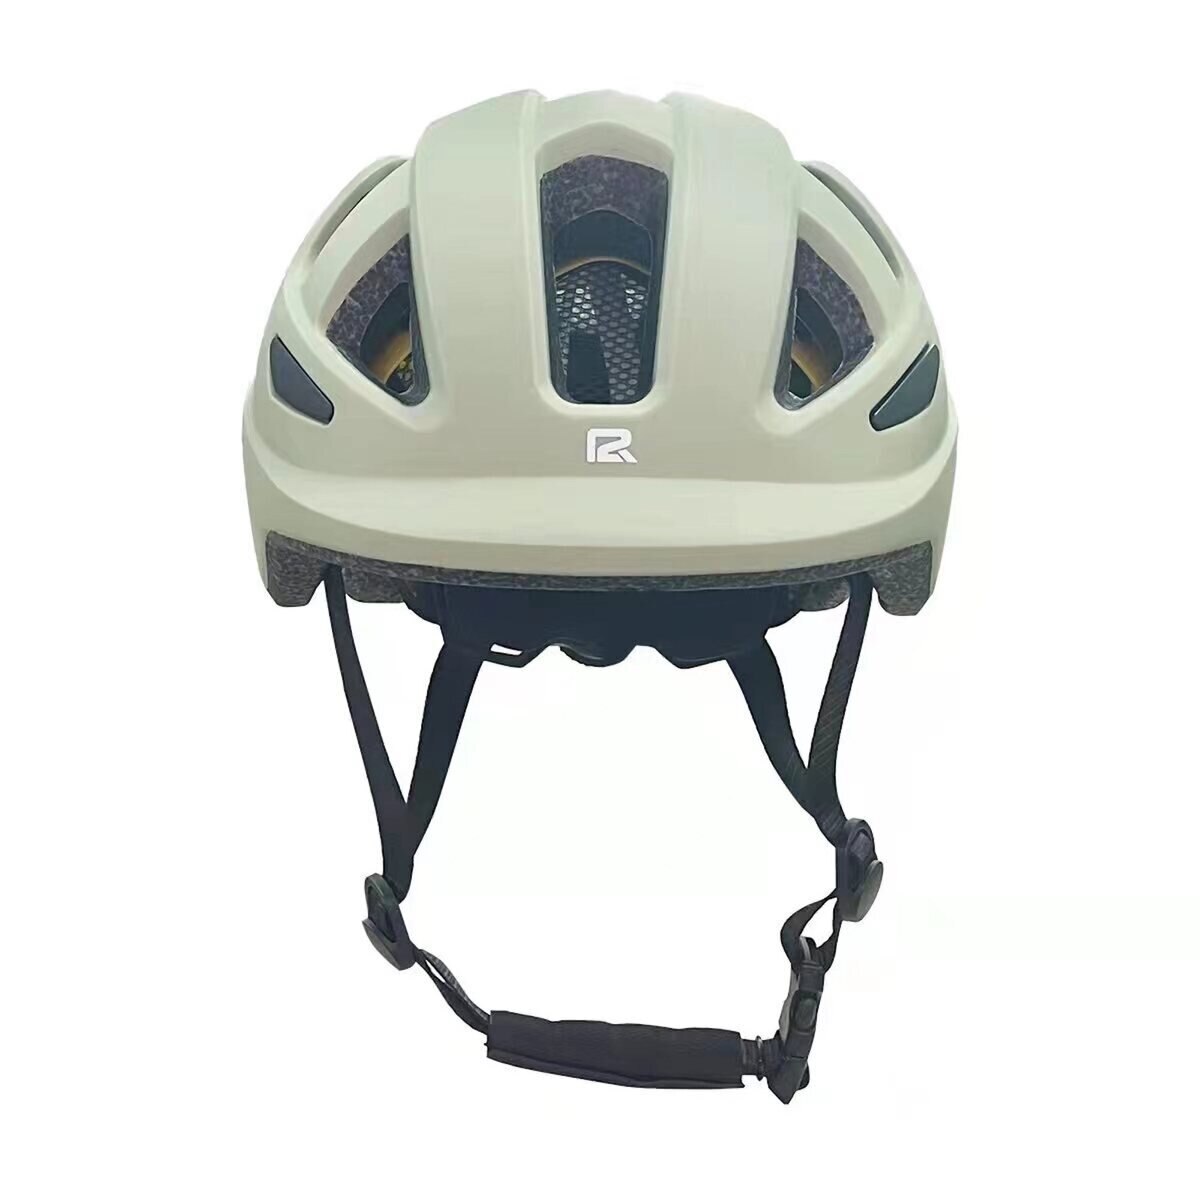 P2R MIPS搭載 自転車用インモールドヘルメット 子供用 モスグリーン